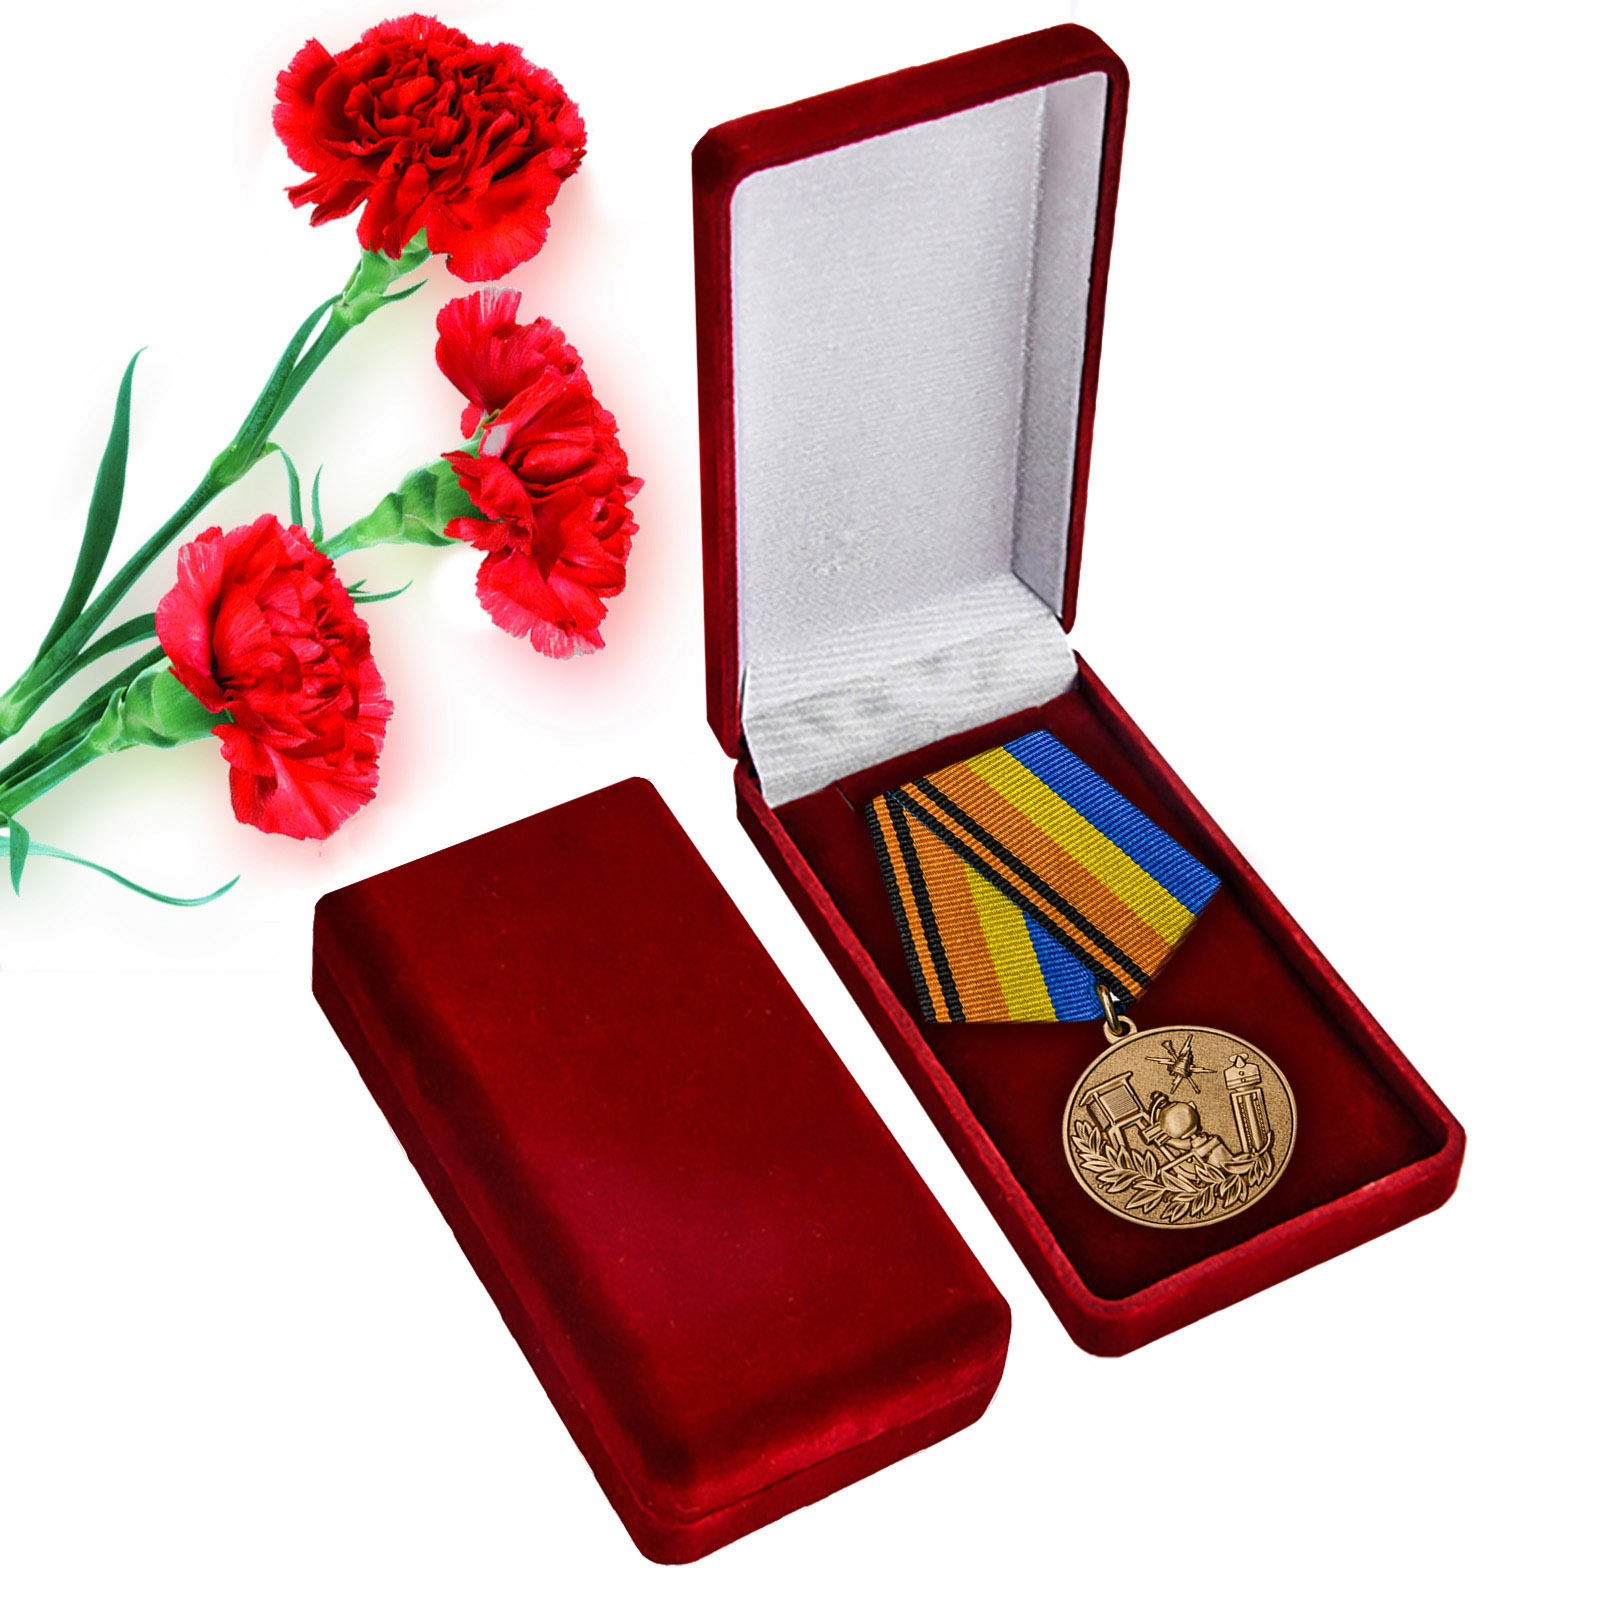 Купить памятную медаль 100 лет Гидрометеорологической службе ВС в подарок